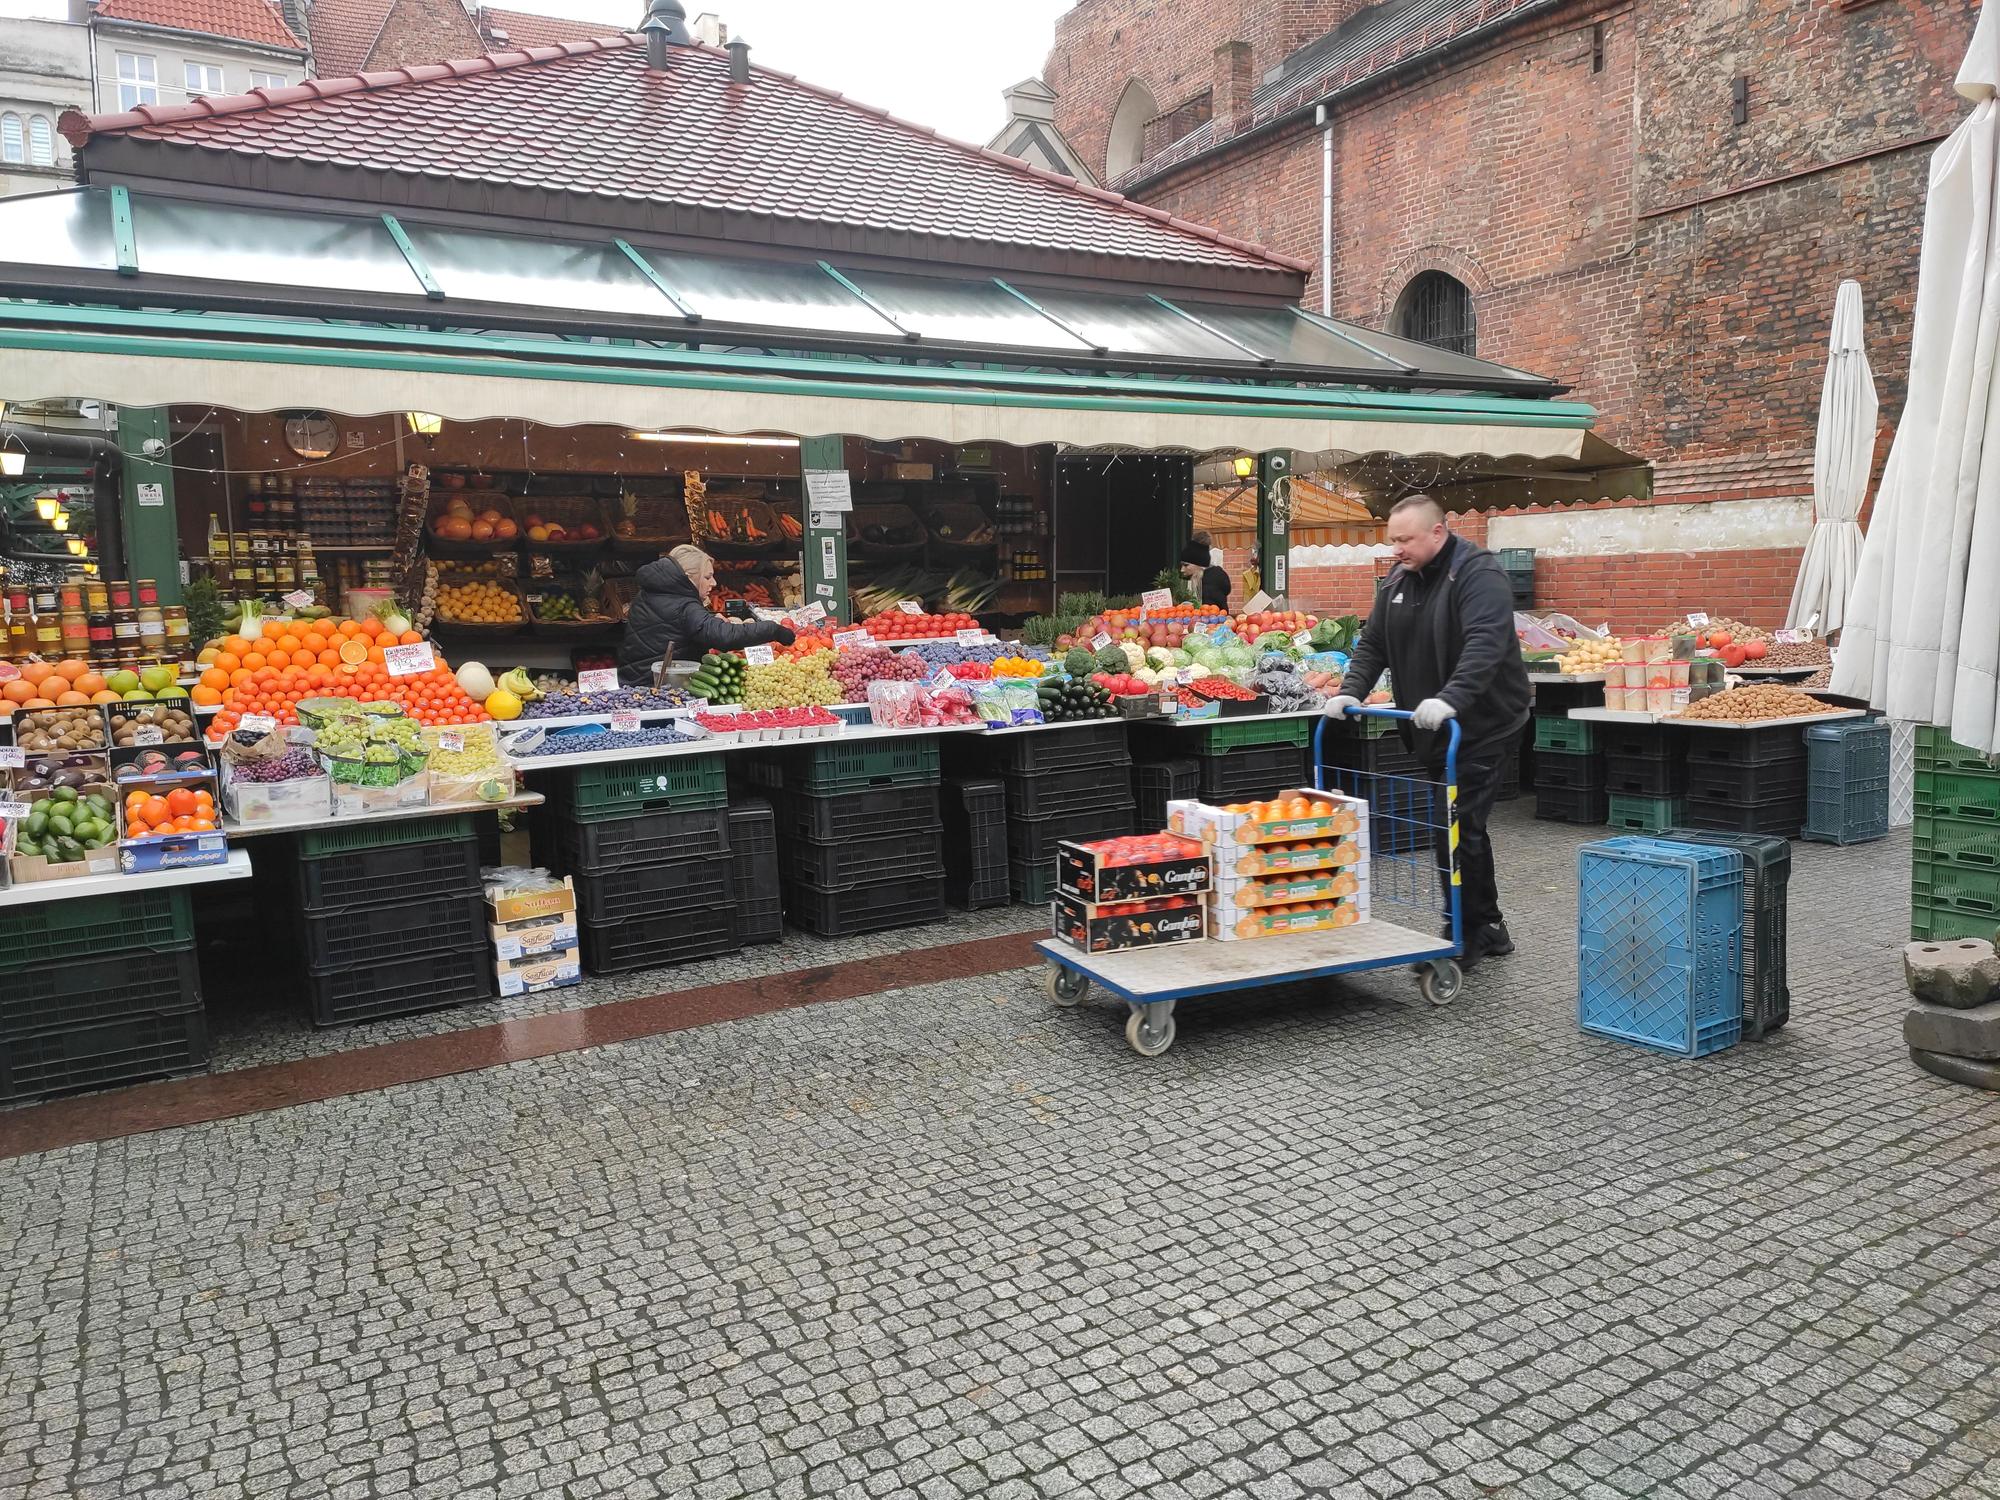 Gdansk, la ciudad de las mil y una puertas